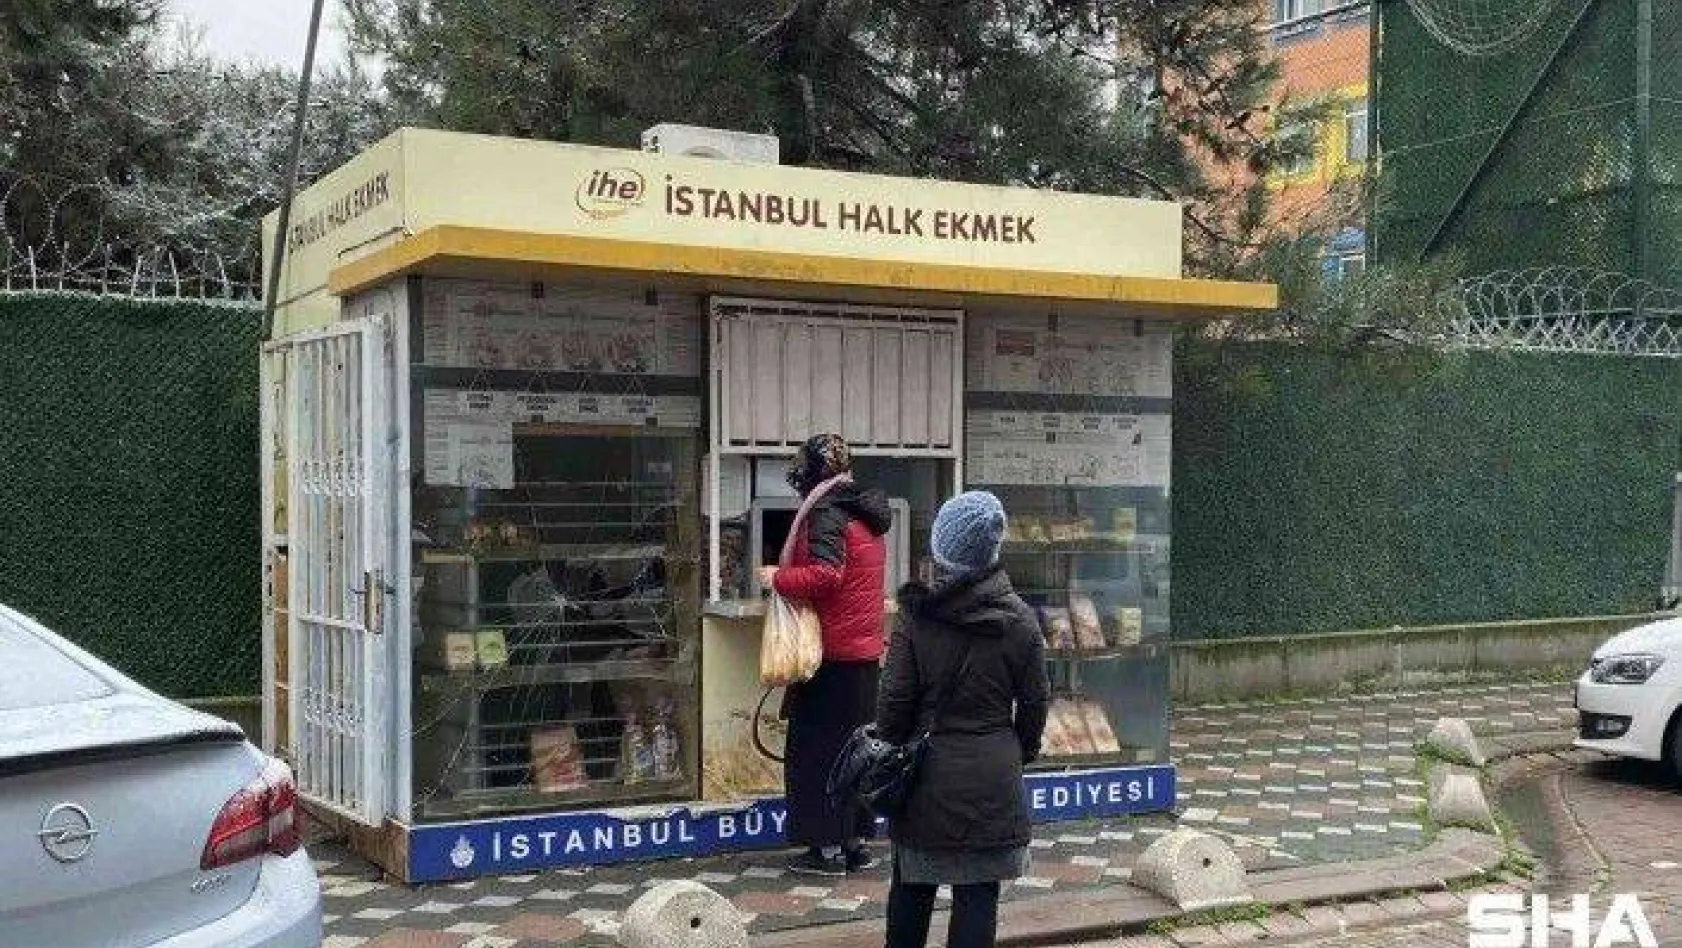 İstanbul'da Halk Ekmek büfesine saldıran şüpheli yakalandı